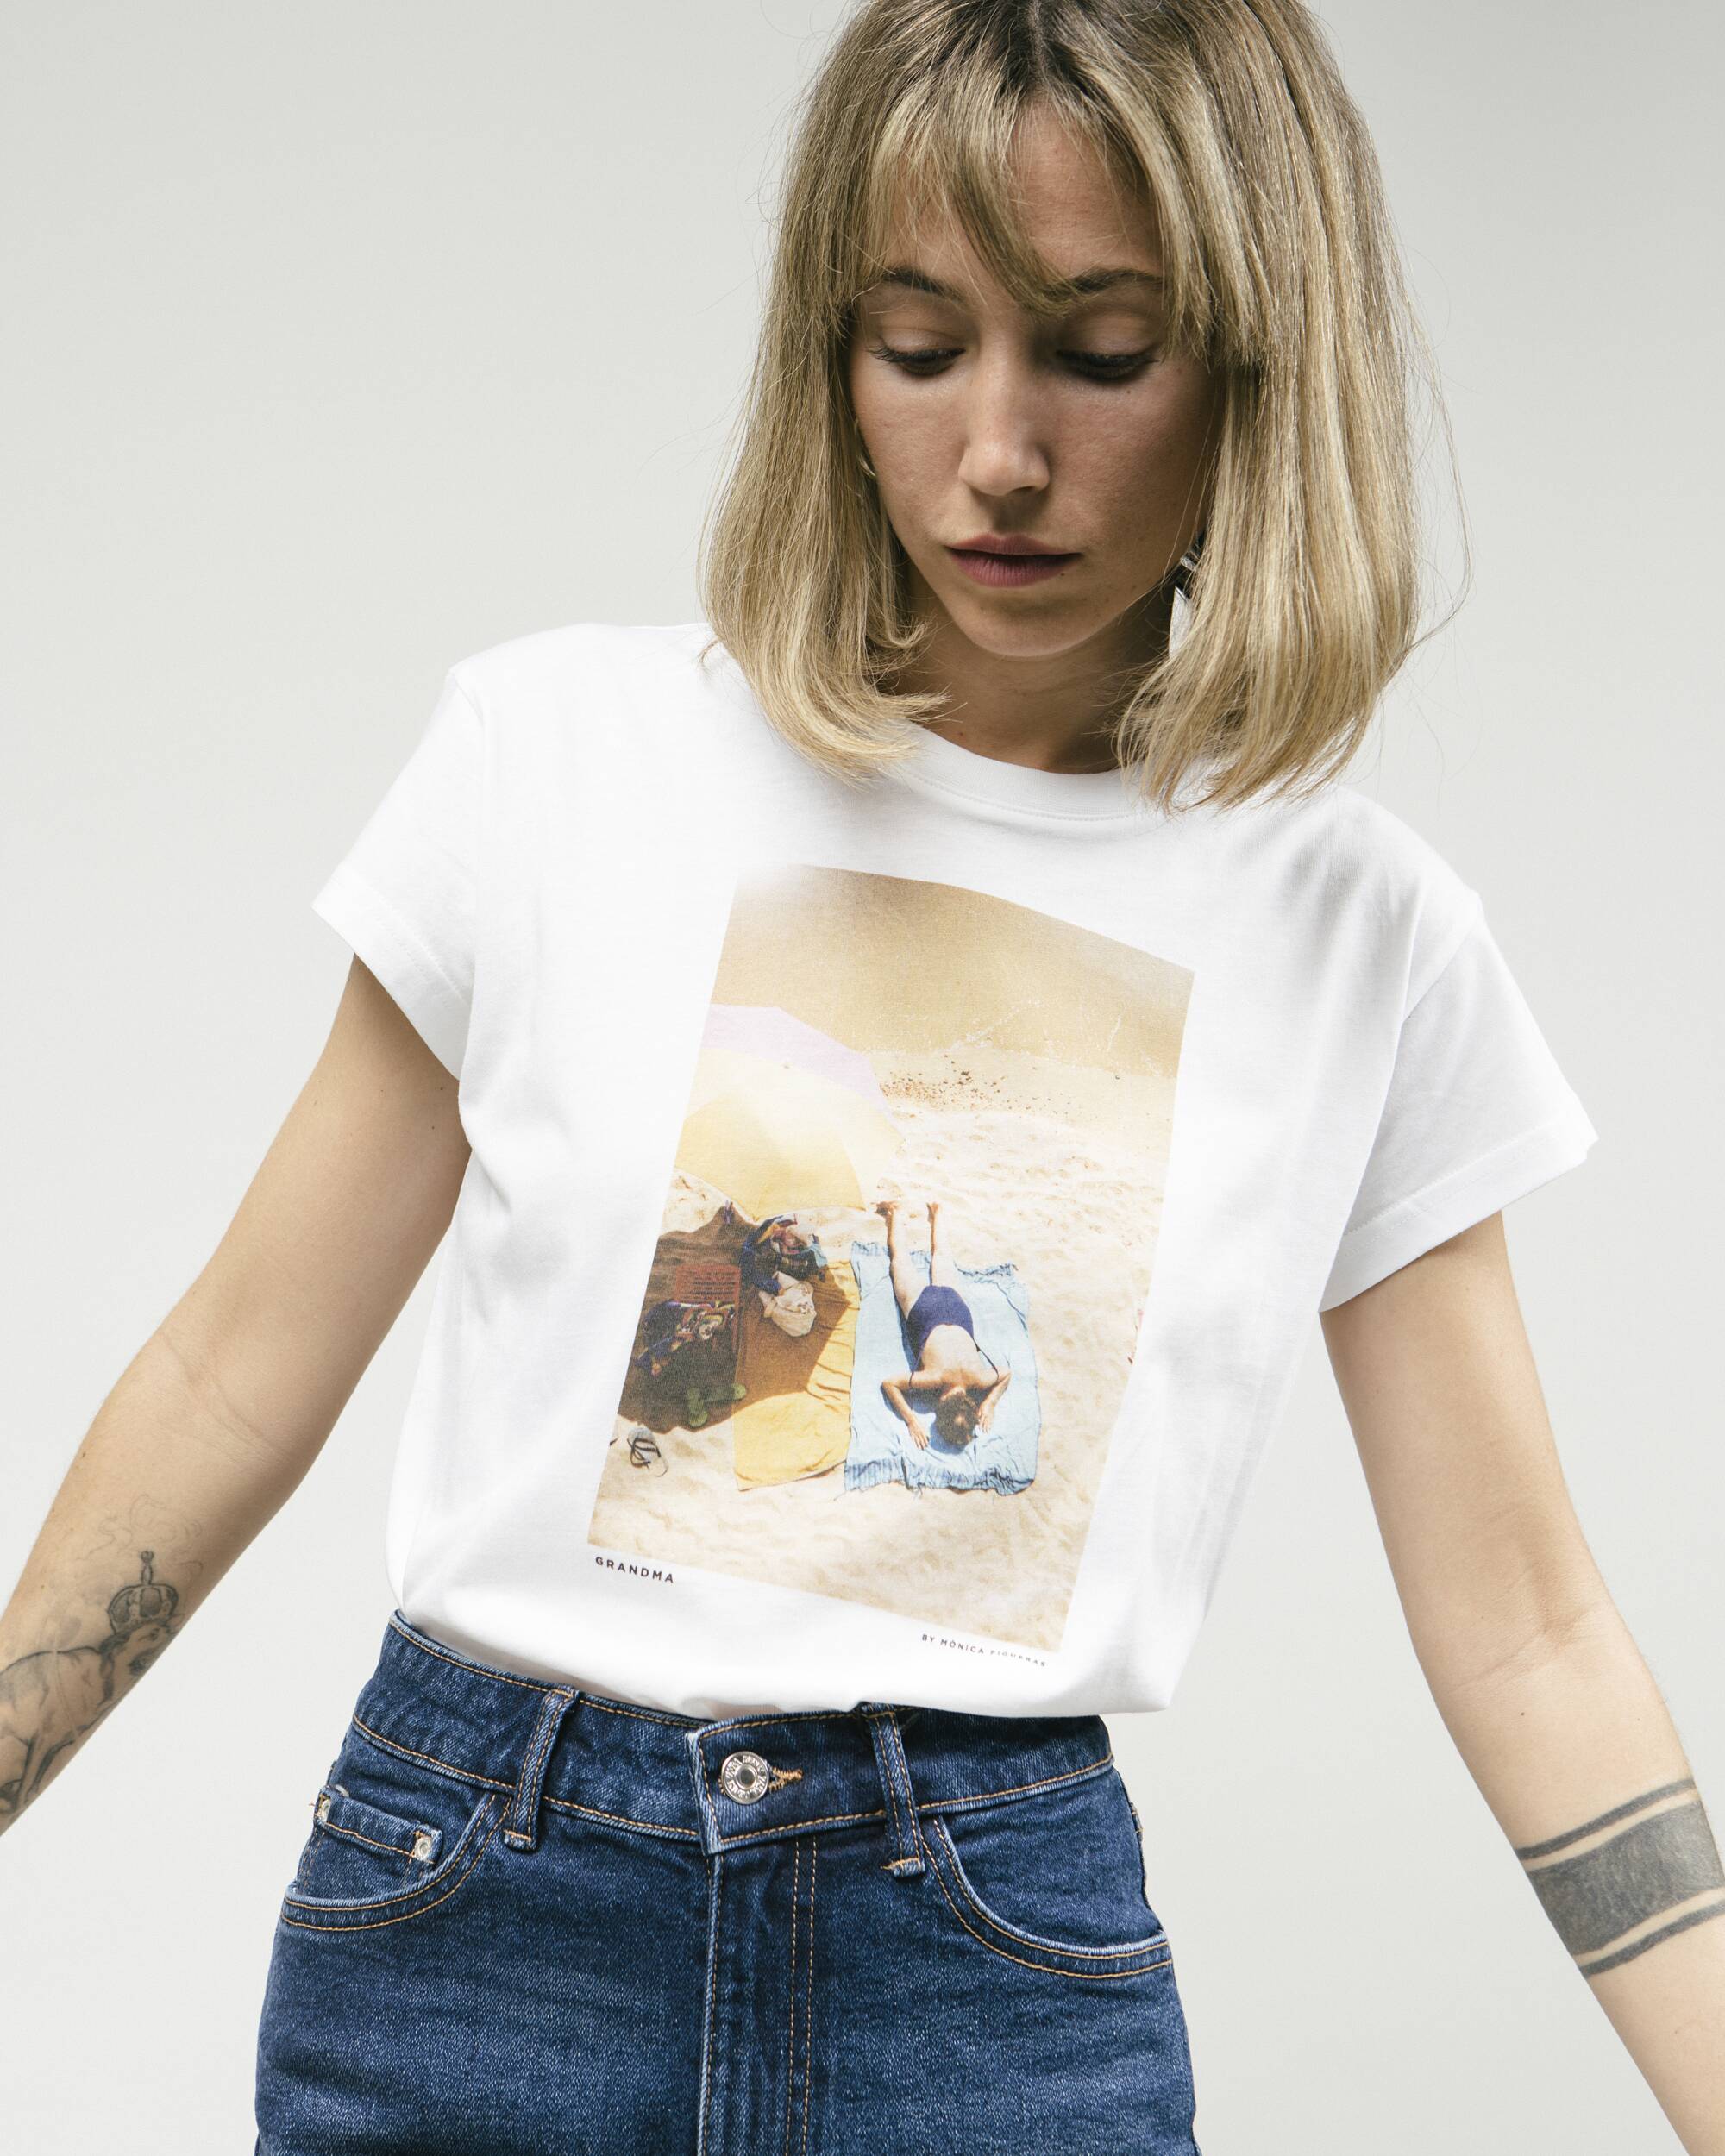 T-Shirt "Grandma" in weiss mit tollem Druckaus 100% Bio - Baumwolle von Brava Fabrics